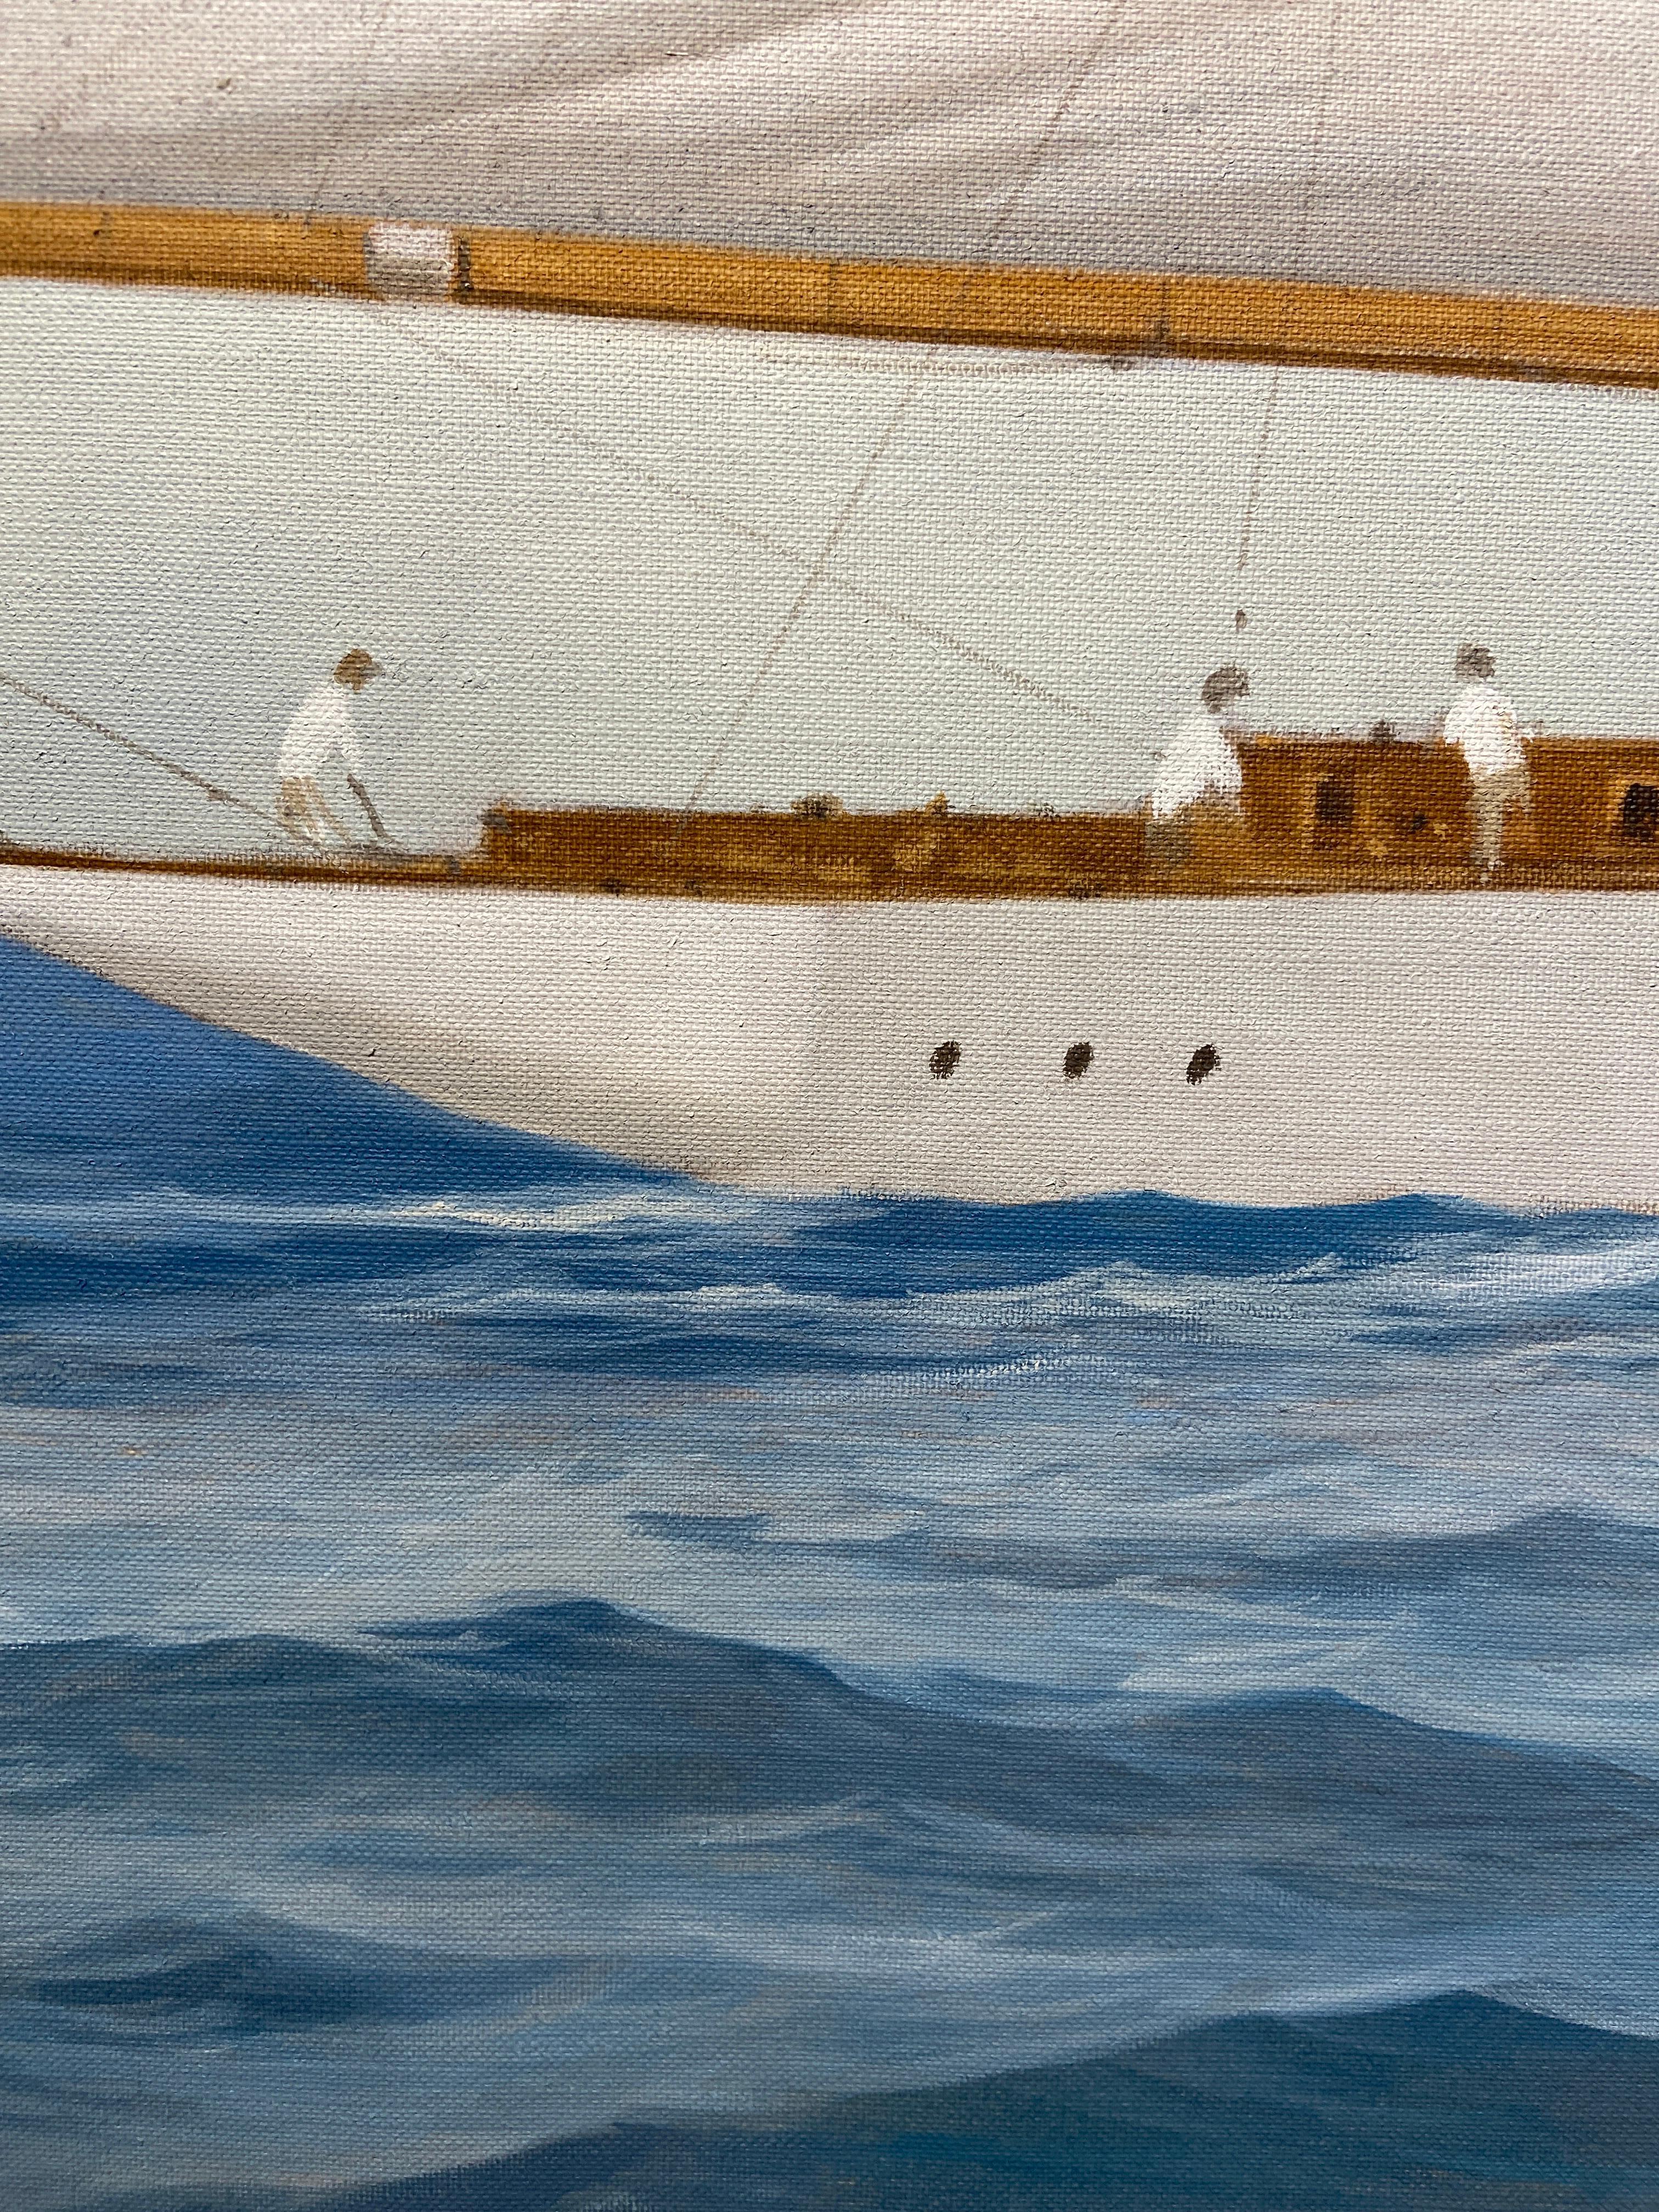 « Paintramique », une peinture à l'huile maritime photoréaliste représentant un navire naviguant - Painting de Michel Brosseau